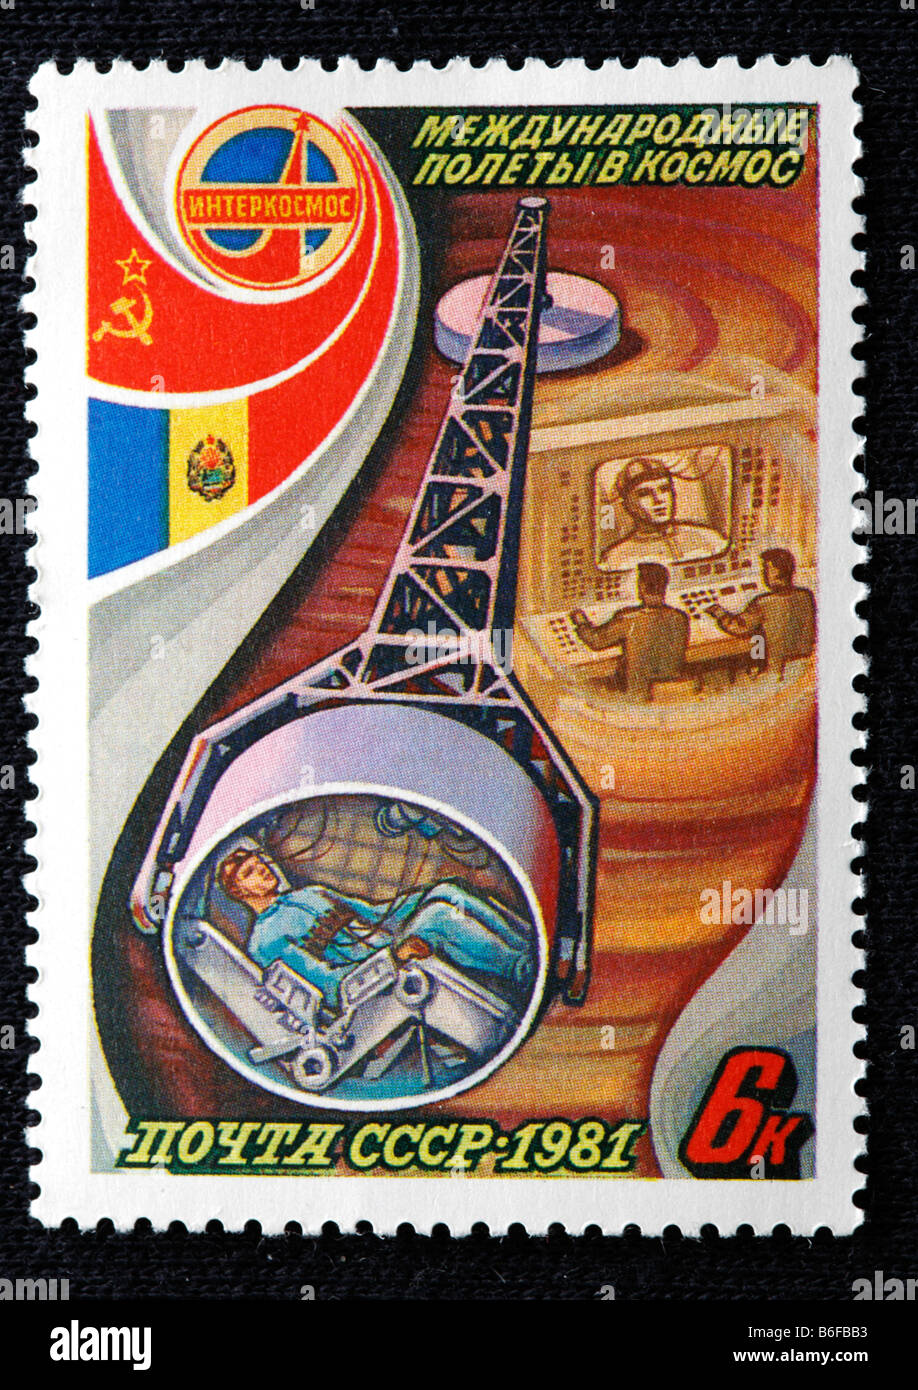 Training der Kosmonauten, Briefmarke, UdSSR, 1981 Stockfoto